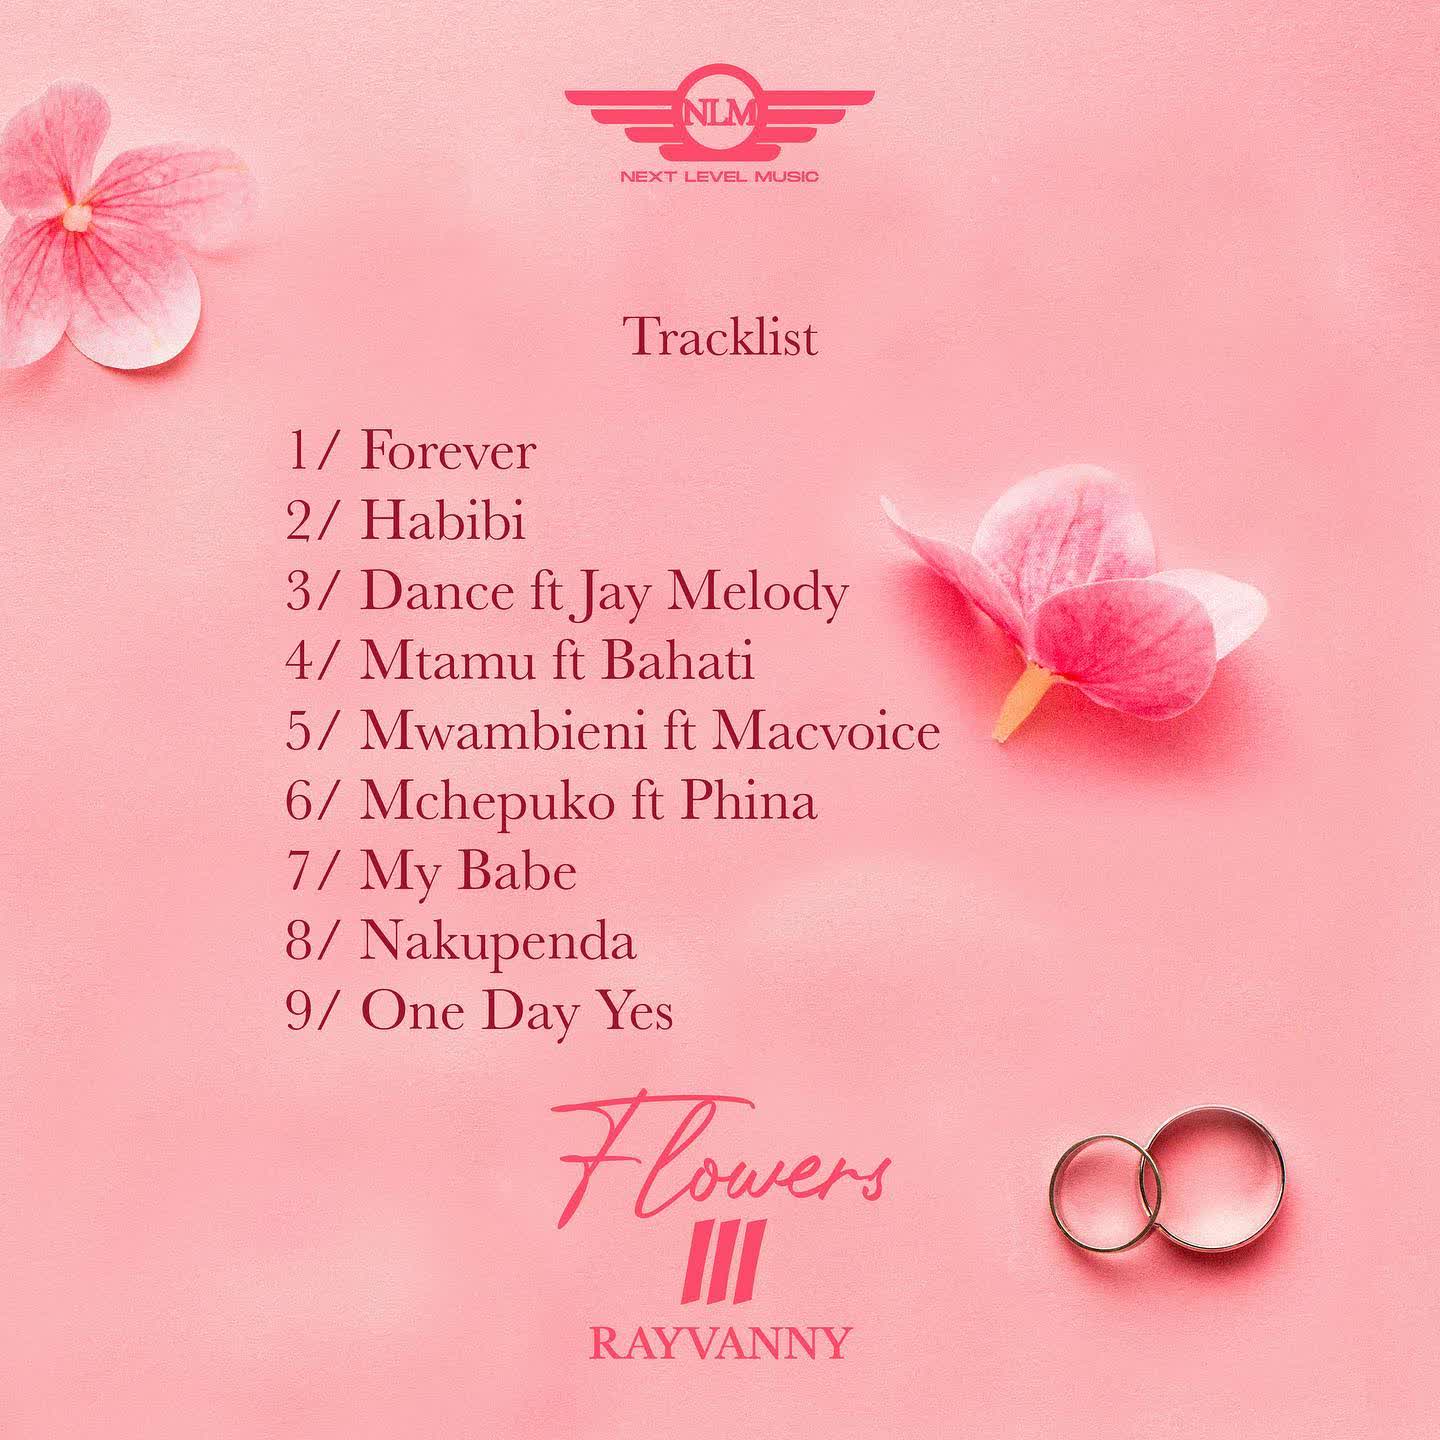 Download Audio | Rayvanny – Flowers III (EP)